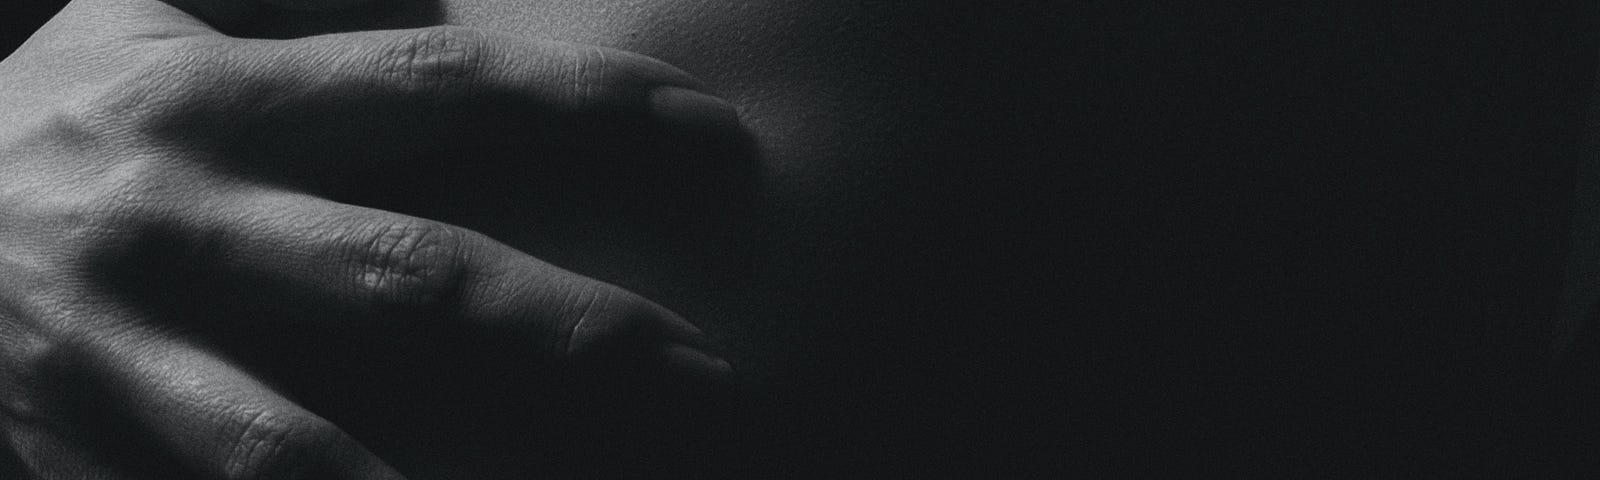 Uma foto escura e em preto e branco. Mostra o que parece ser as costas de uma pessoa com par de mãos a segurando.